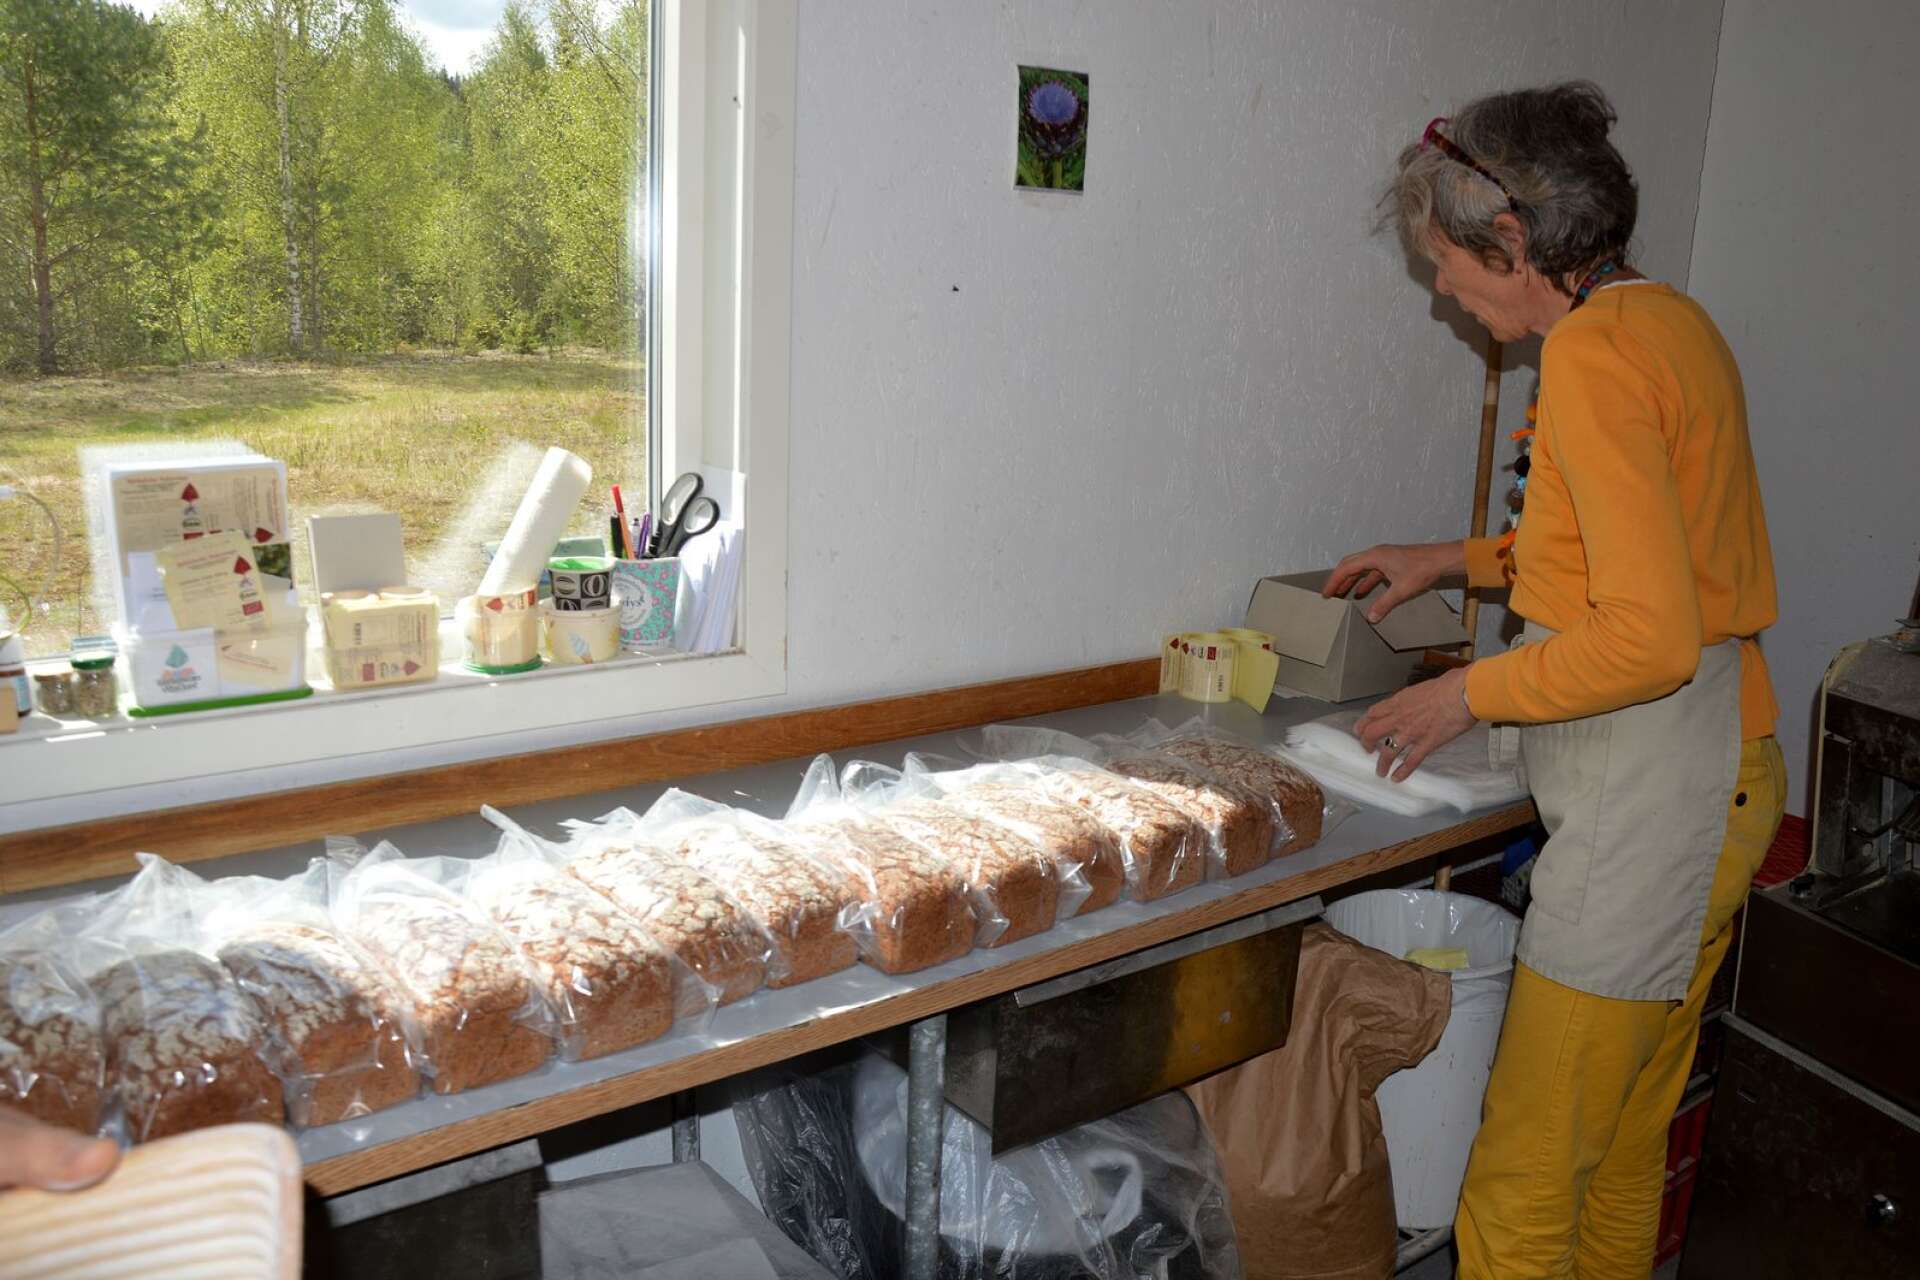 Cornelia packar brödet som är gjort på fullkorn i hantverksbageriet som ligger i Björkaholm öster om Ransbysäter. Brödet levereras till butiker runtom i Värmland men det går också att köpa brödet direkt på plats när bageriet är öppet.